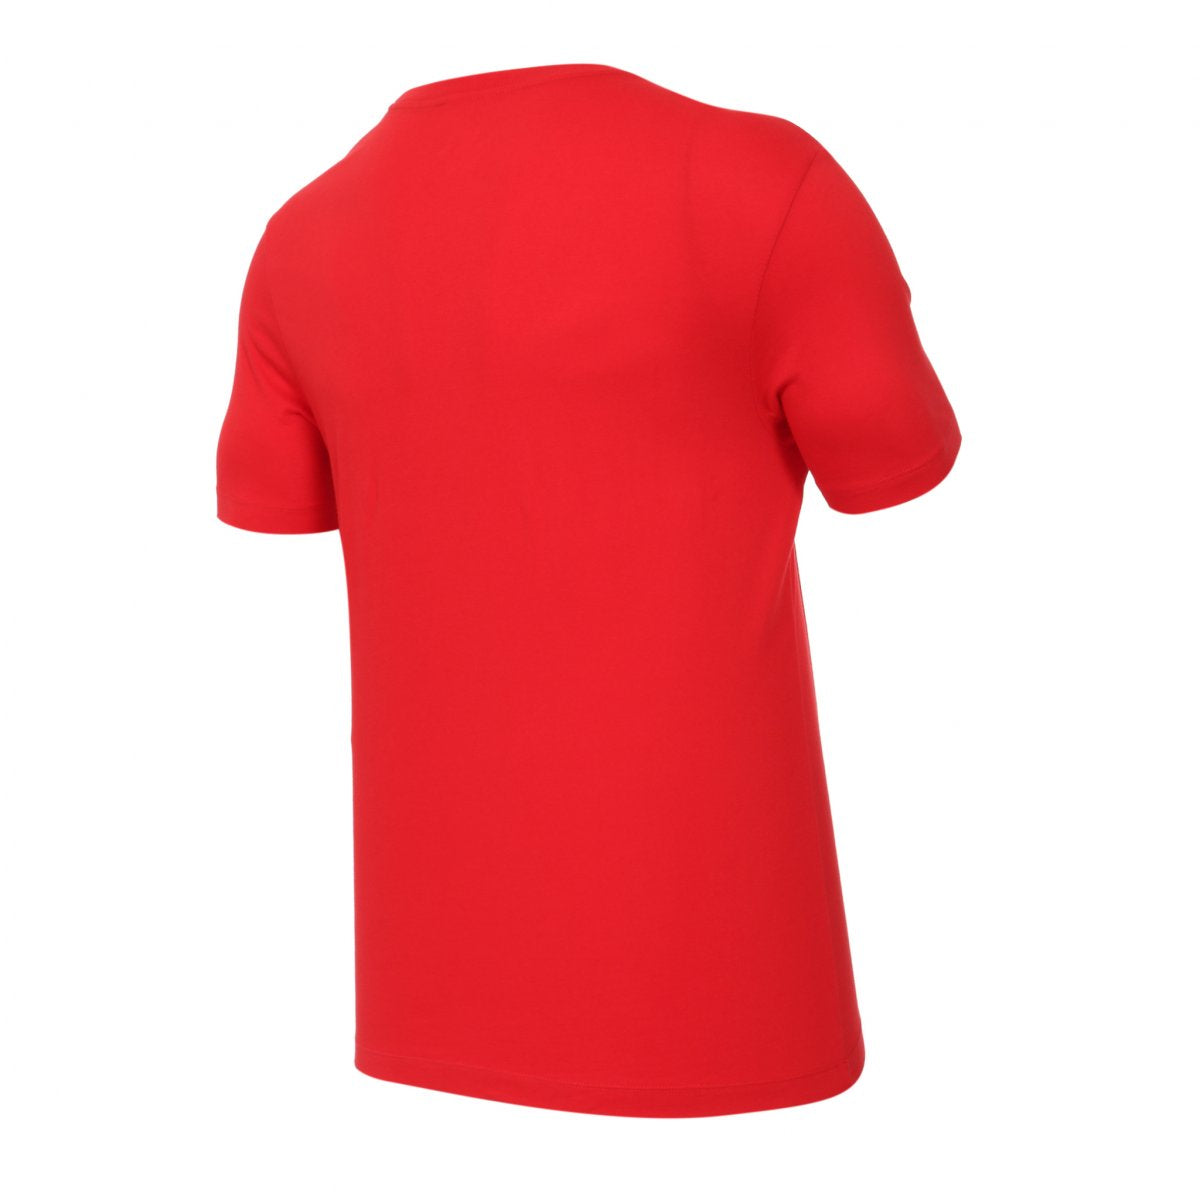 Nike FC Barcelona Crest Men's Soccer T-Shirt